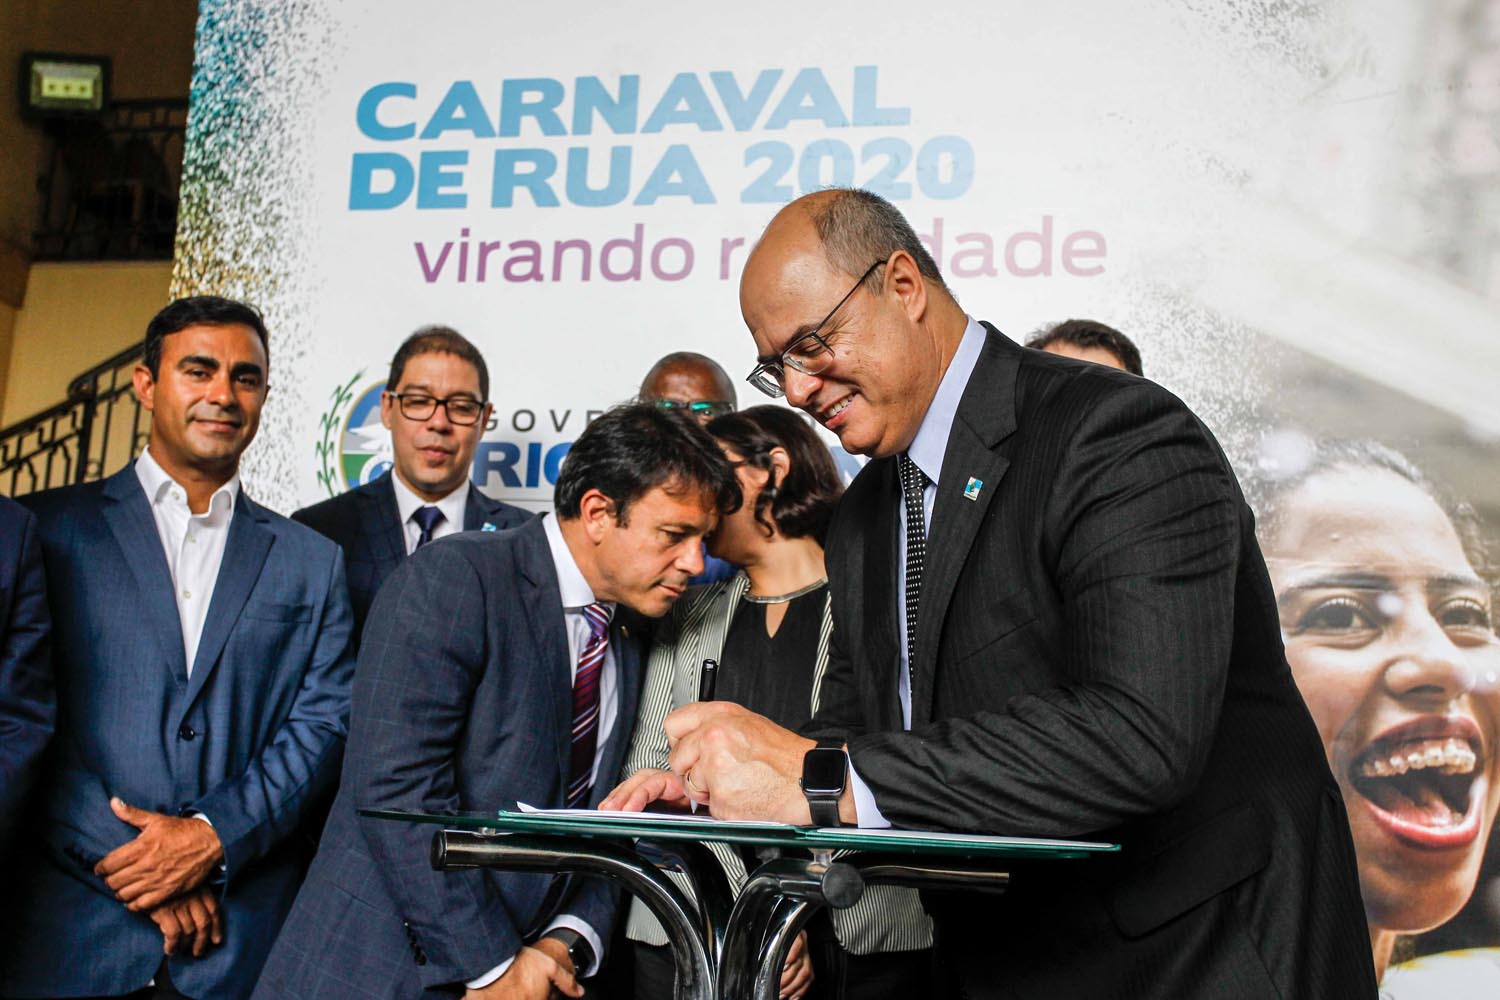 Estado anuncia apoio ao Carnaval  de rua do Rio de Janeiro